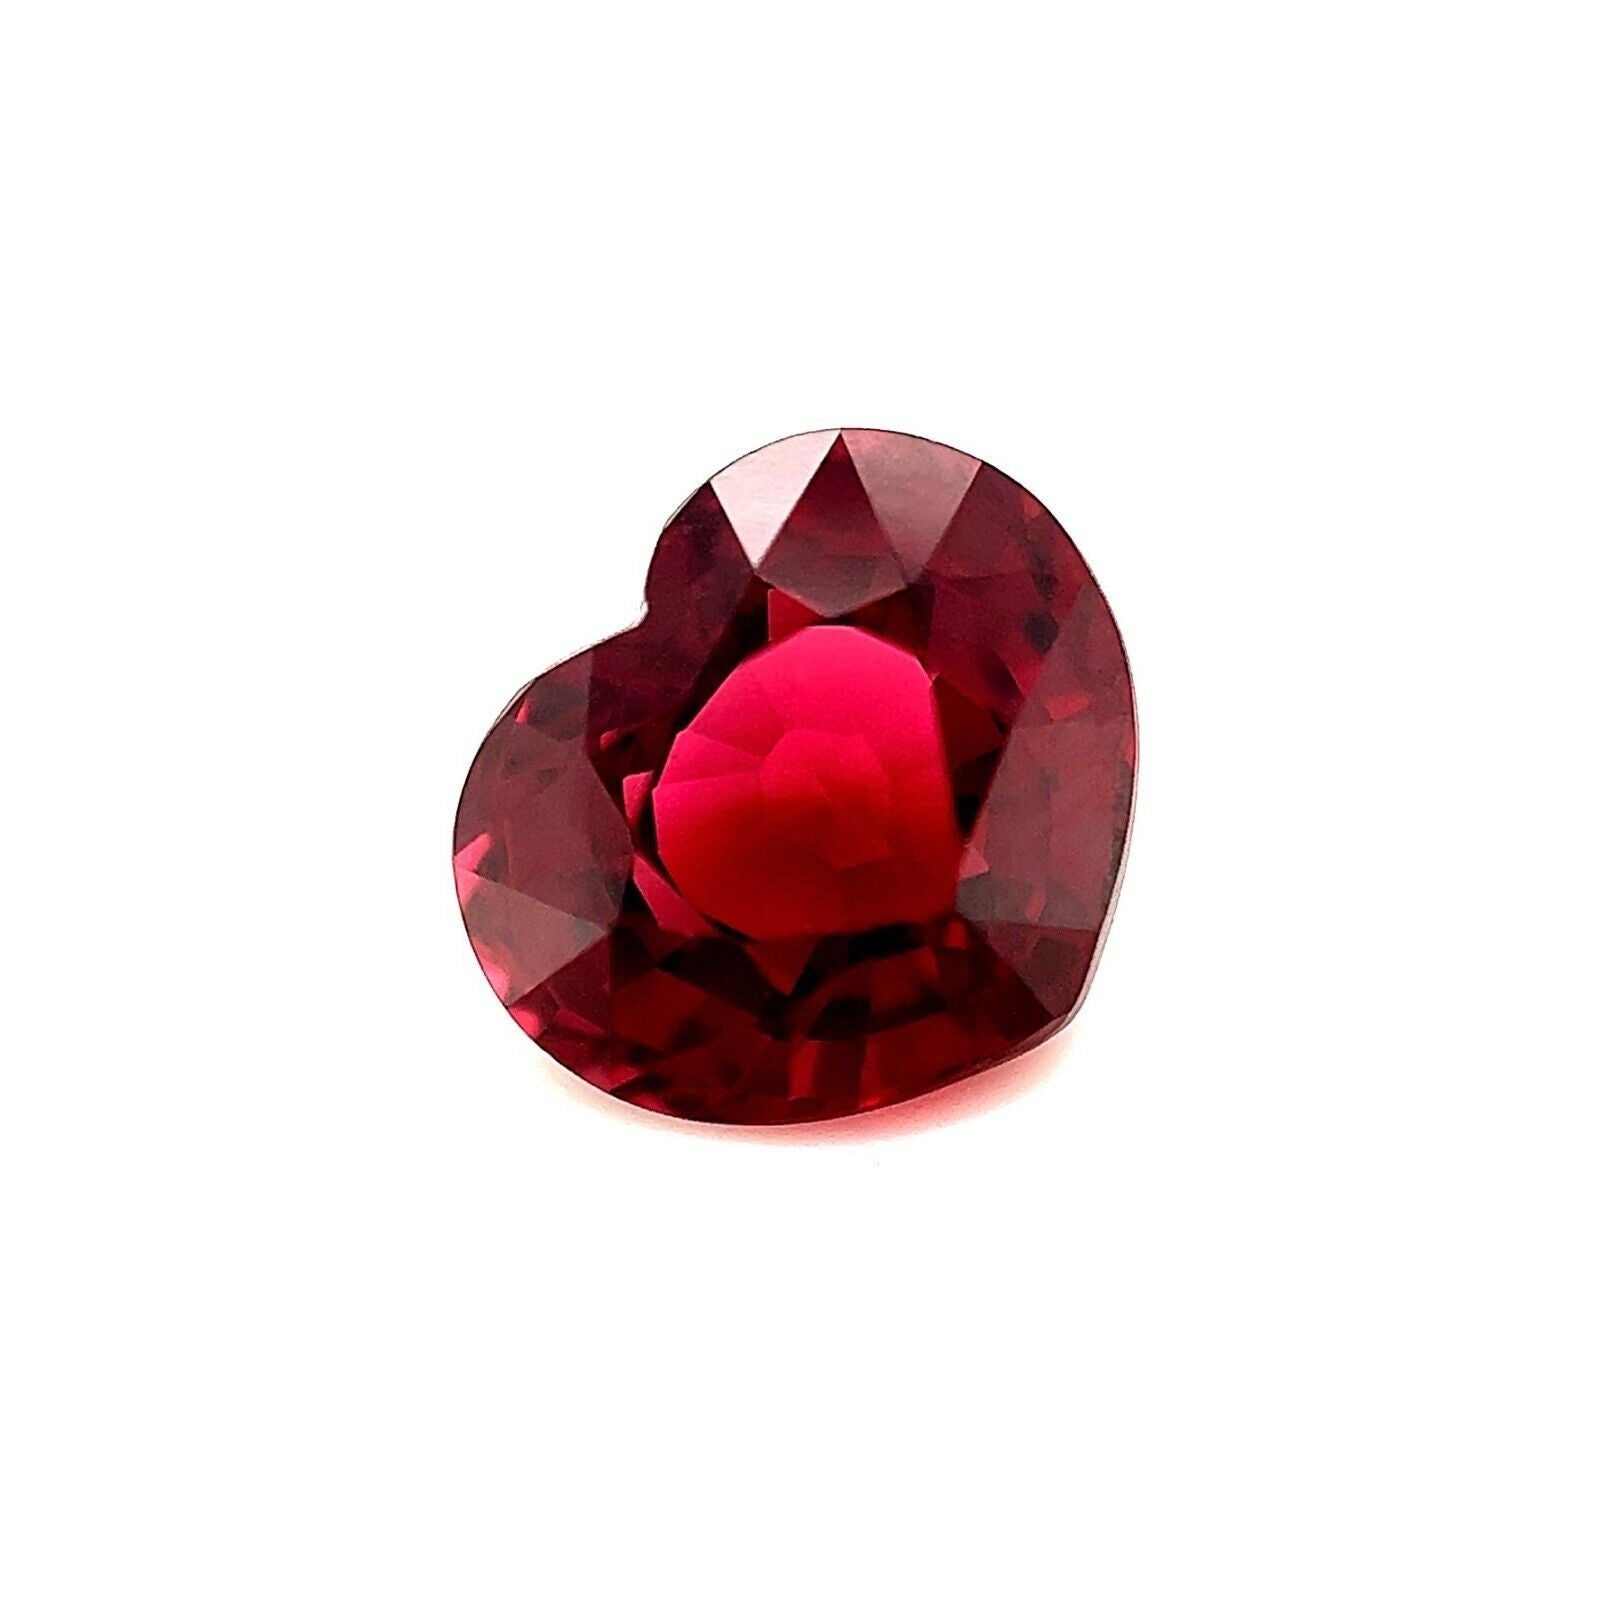 Pierre précieuse non sertie, grenat rhodolite rose violacé taille cœur de 3,13 carats, 9 x 8 mm, VVS